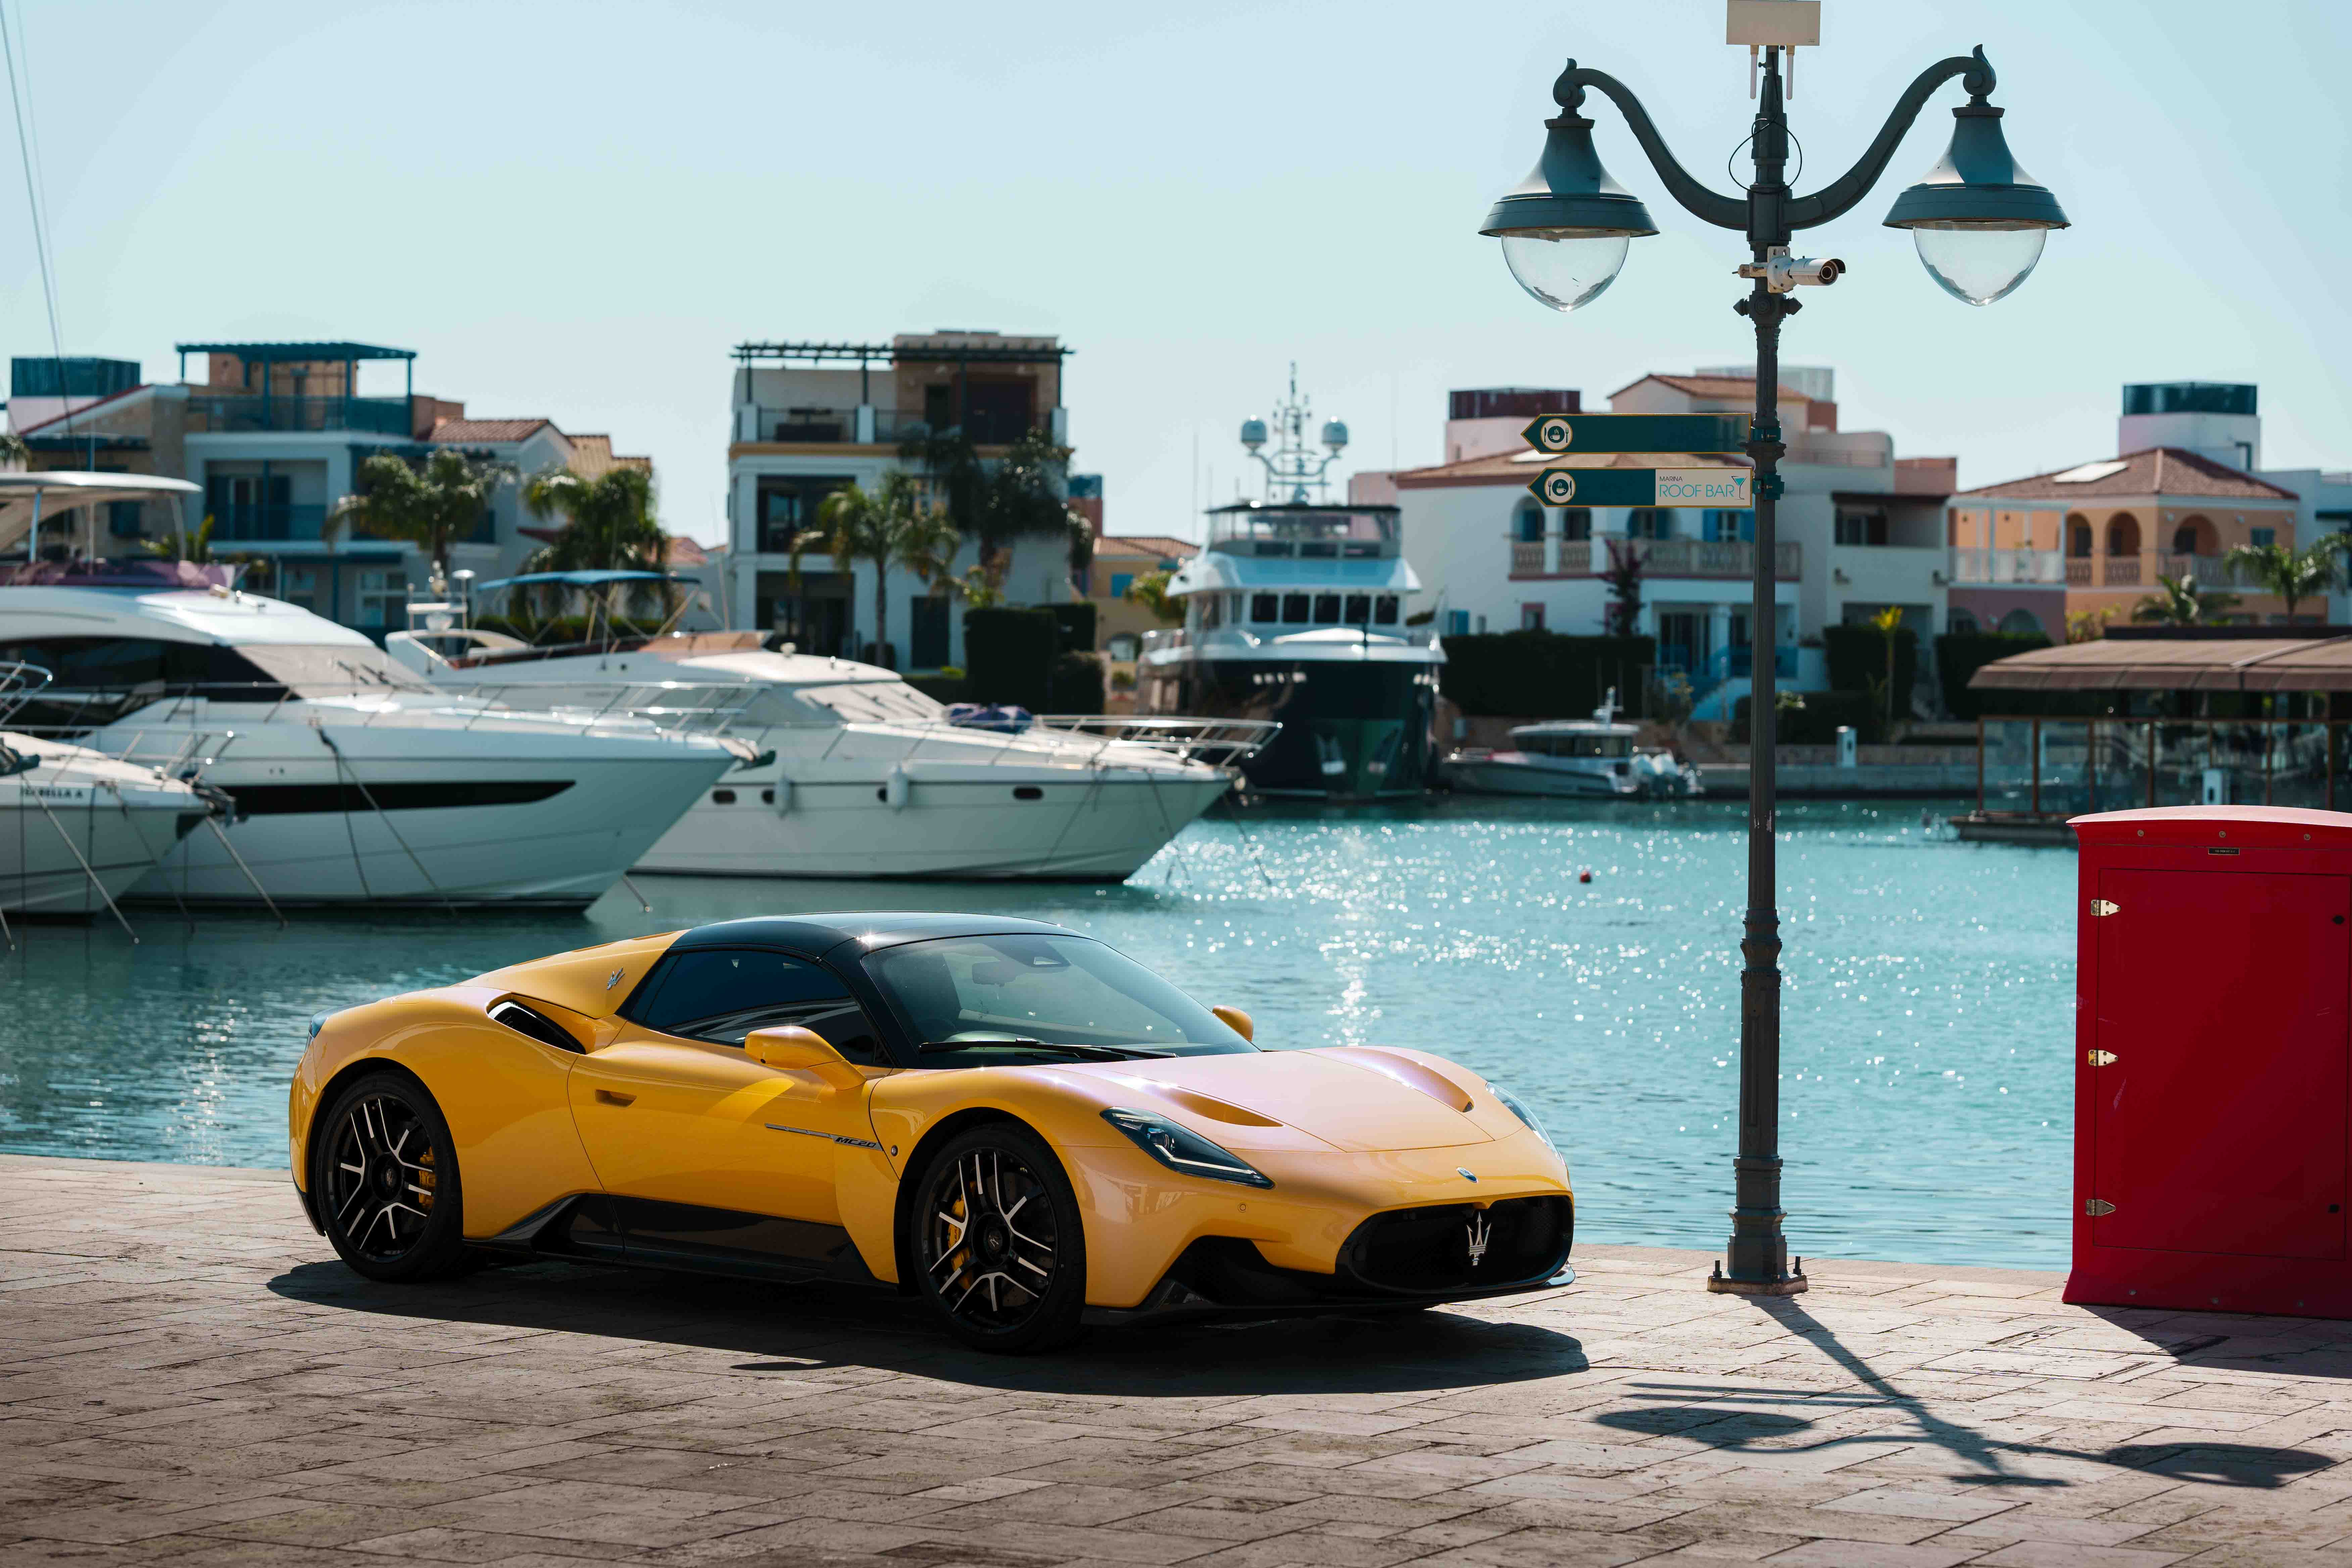 Δυναμική εμφάνιση από τη Maserati στο Limassol Boat Show